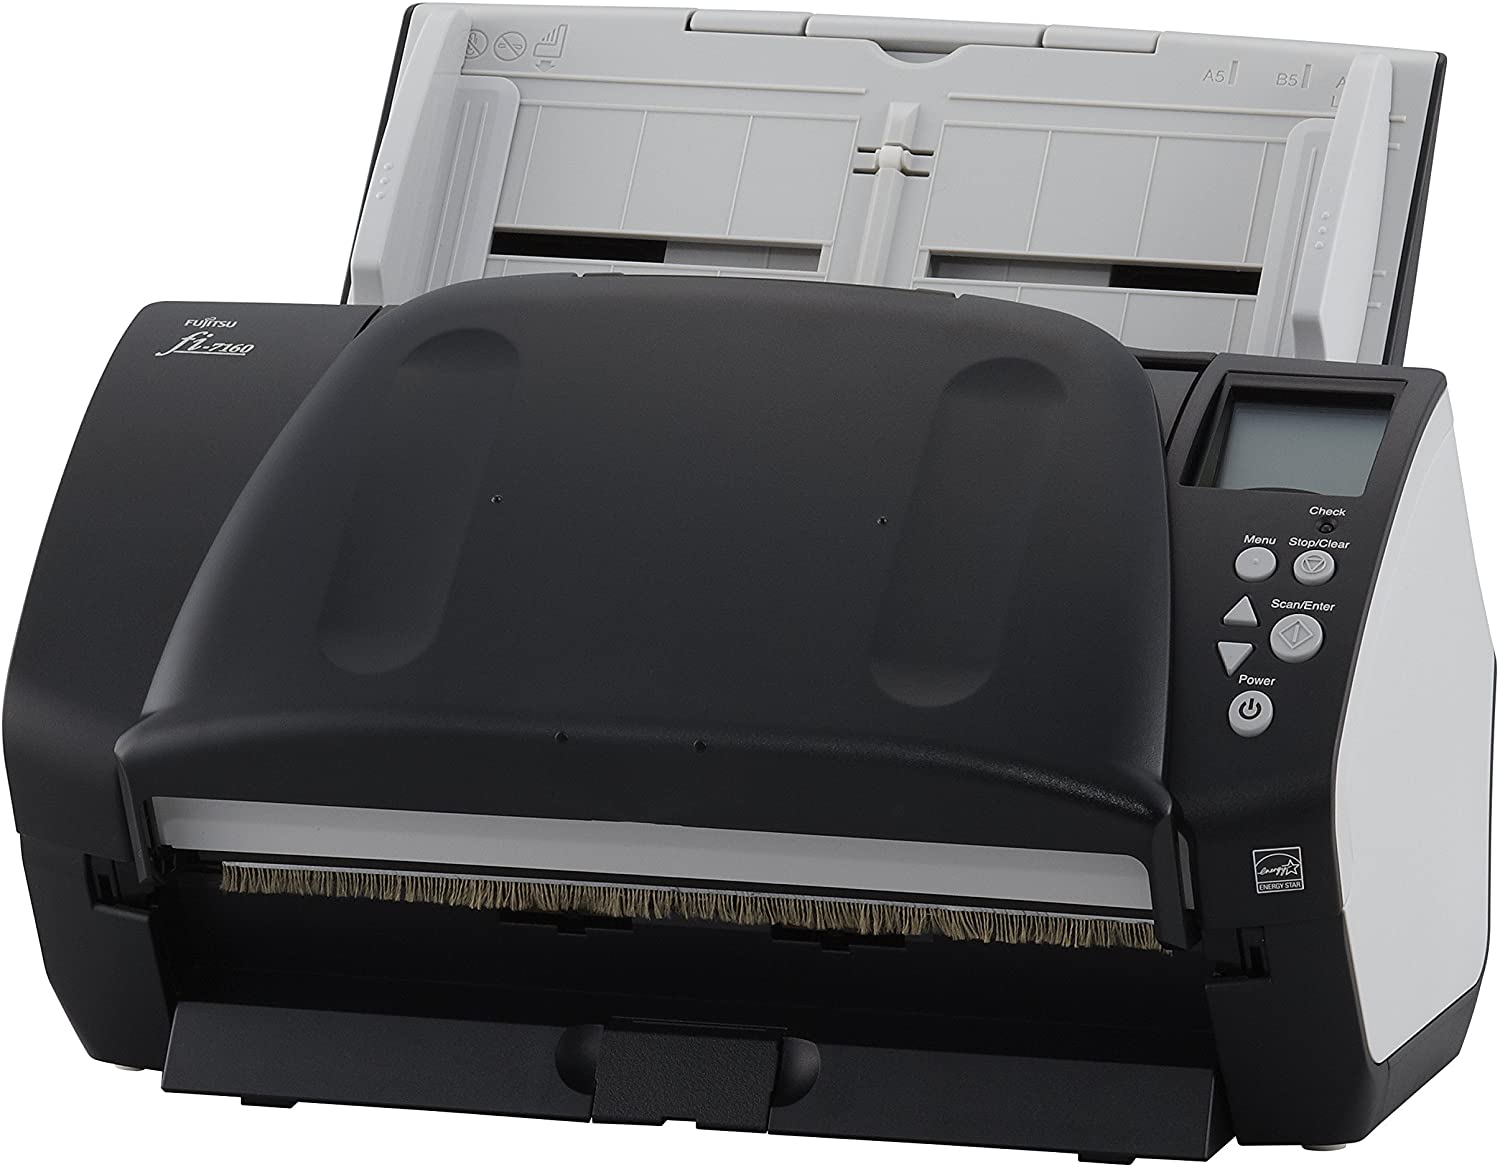 FUJITSU fi-7160 Scanner di immagini e documenti Velocità 60 /120 Pagine al minuto. Il migliore e più veloce scanner documentale